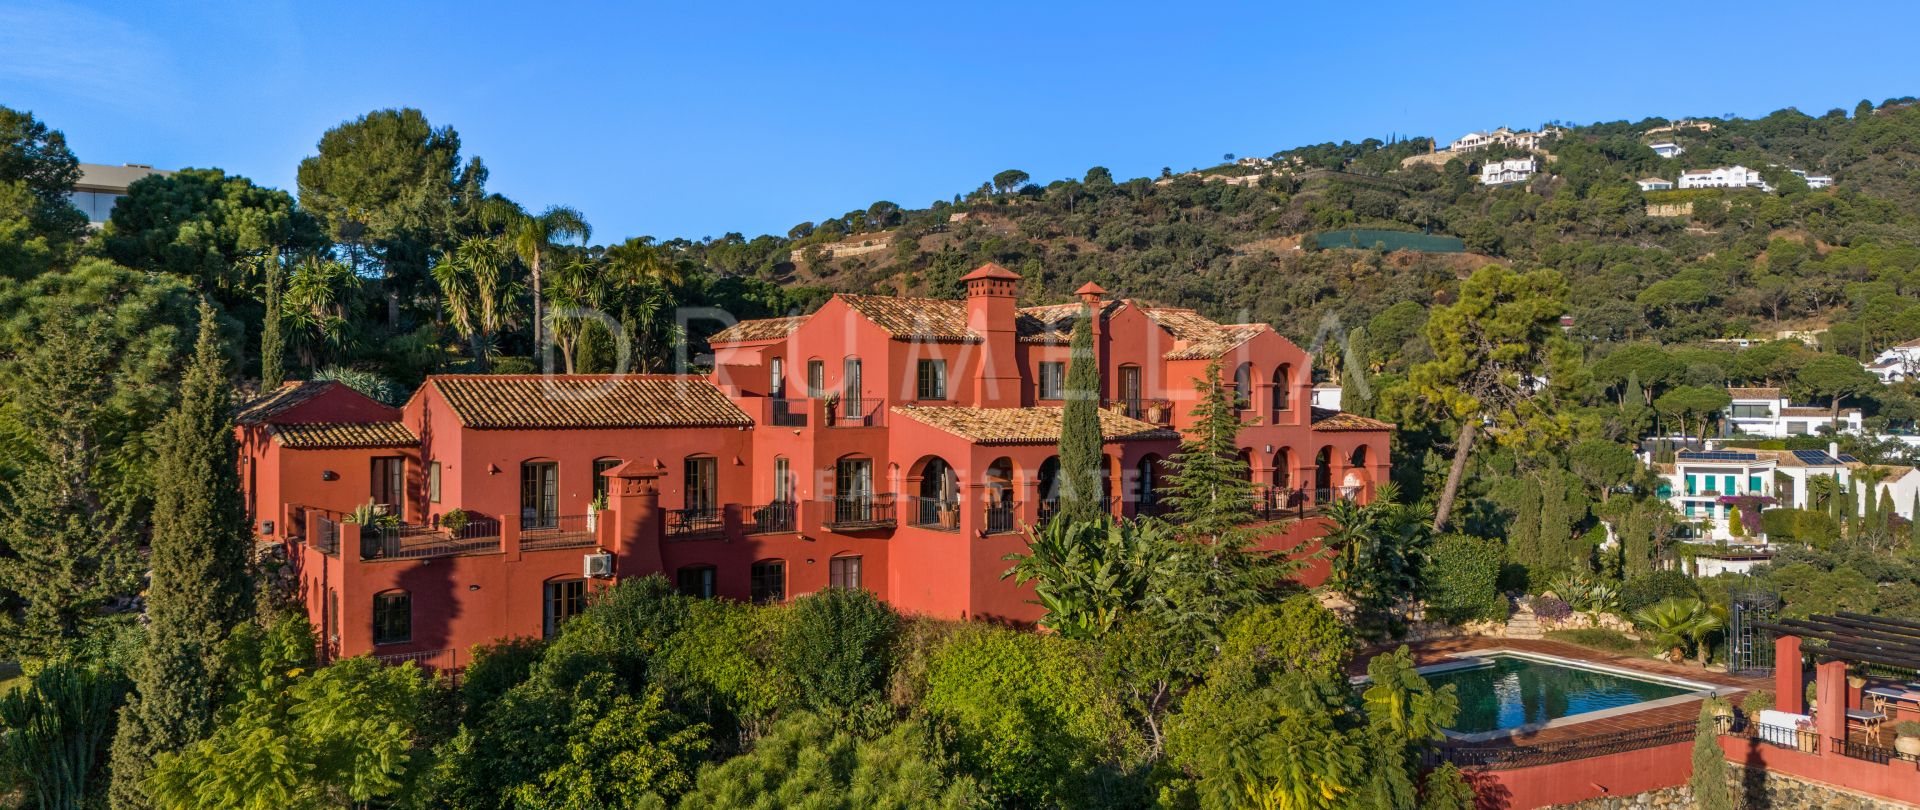 Villa i andalusisk stil till salu i hjärtat av El Madroñal, Behanavis